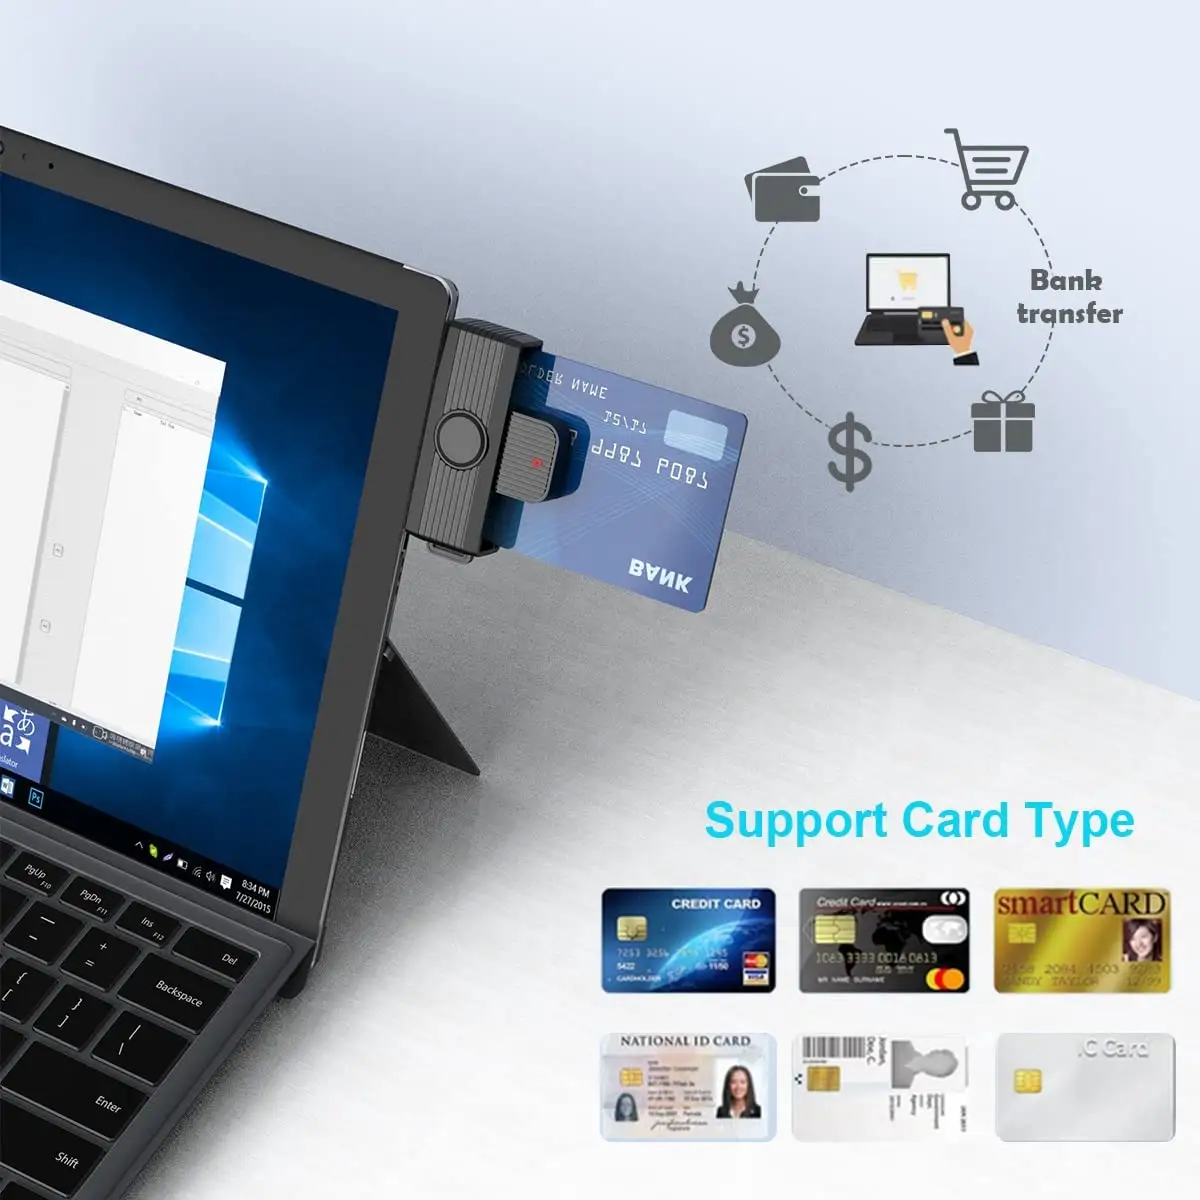 USB внутренний считыватель смарт-карт совместим с несколькими операционными системами и контактными смарт-картами